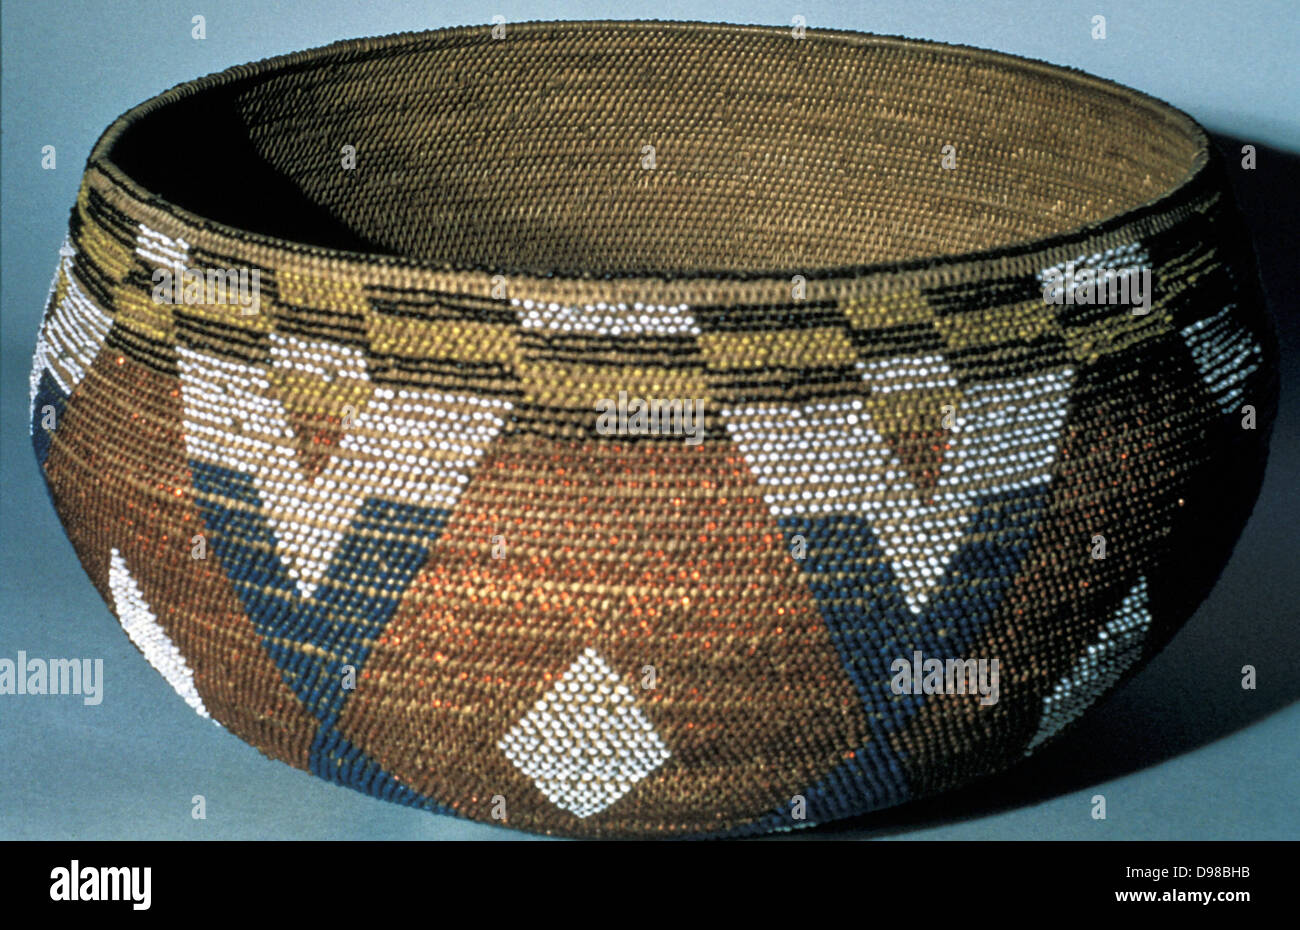 Les Indiens de l'Amérique du Nord : artefact panier de cérémonie. Wappo, en Californie. Banque D'Images